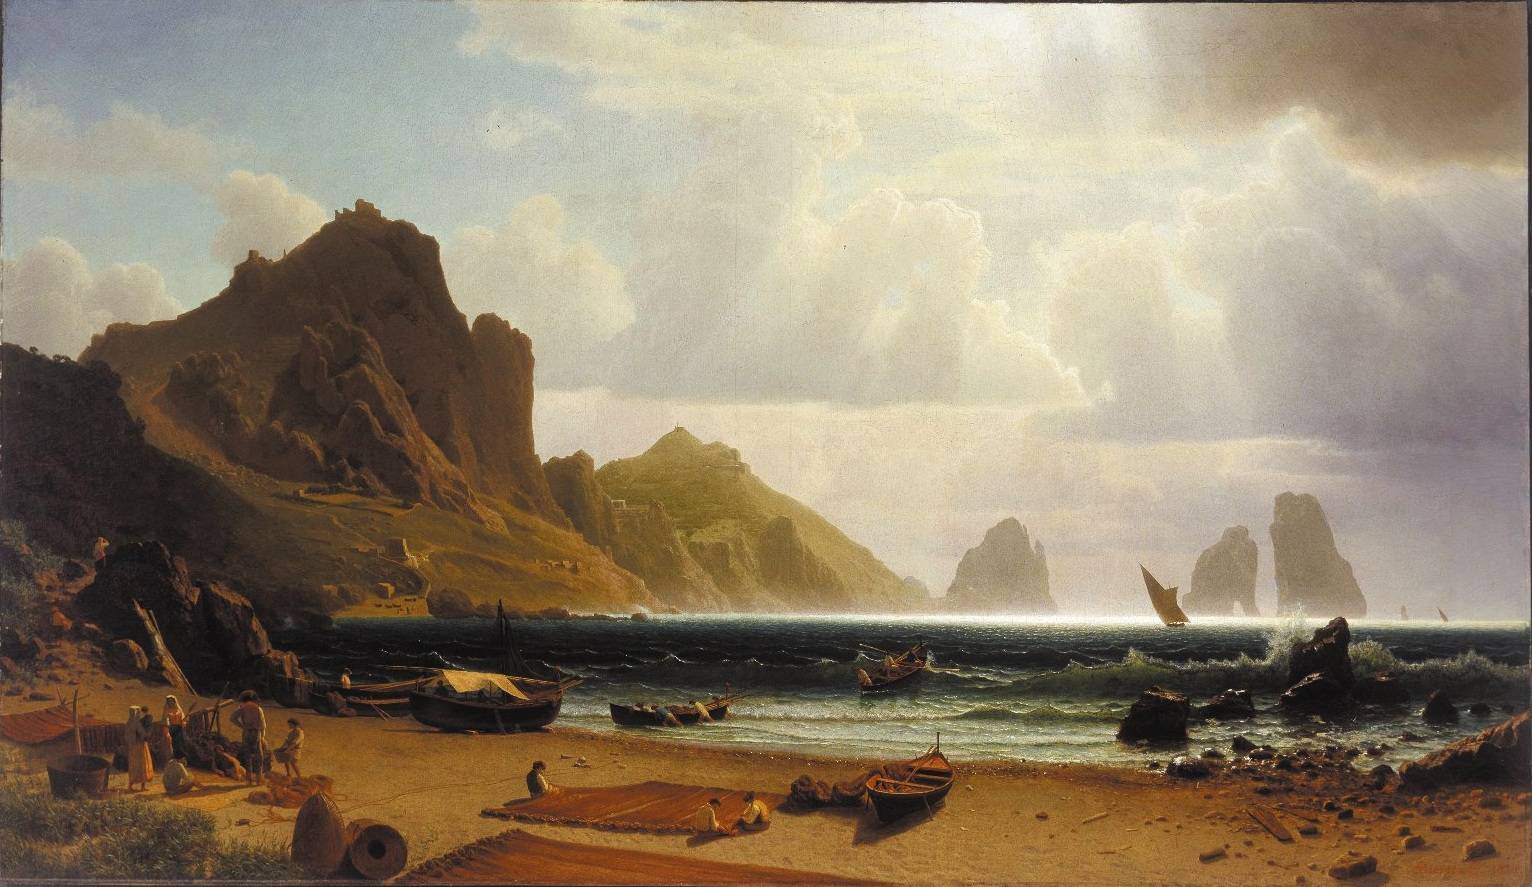 Albert Bierstadt (1859)